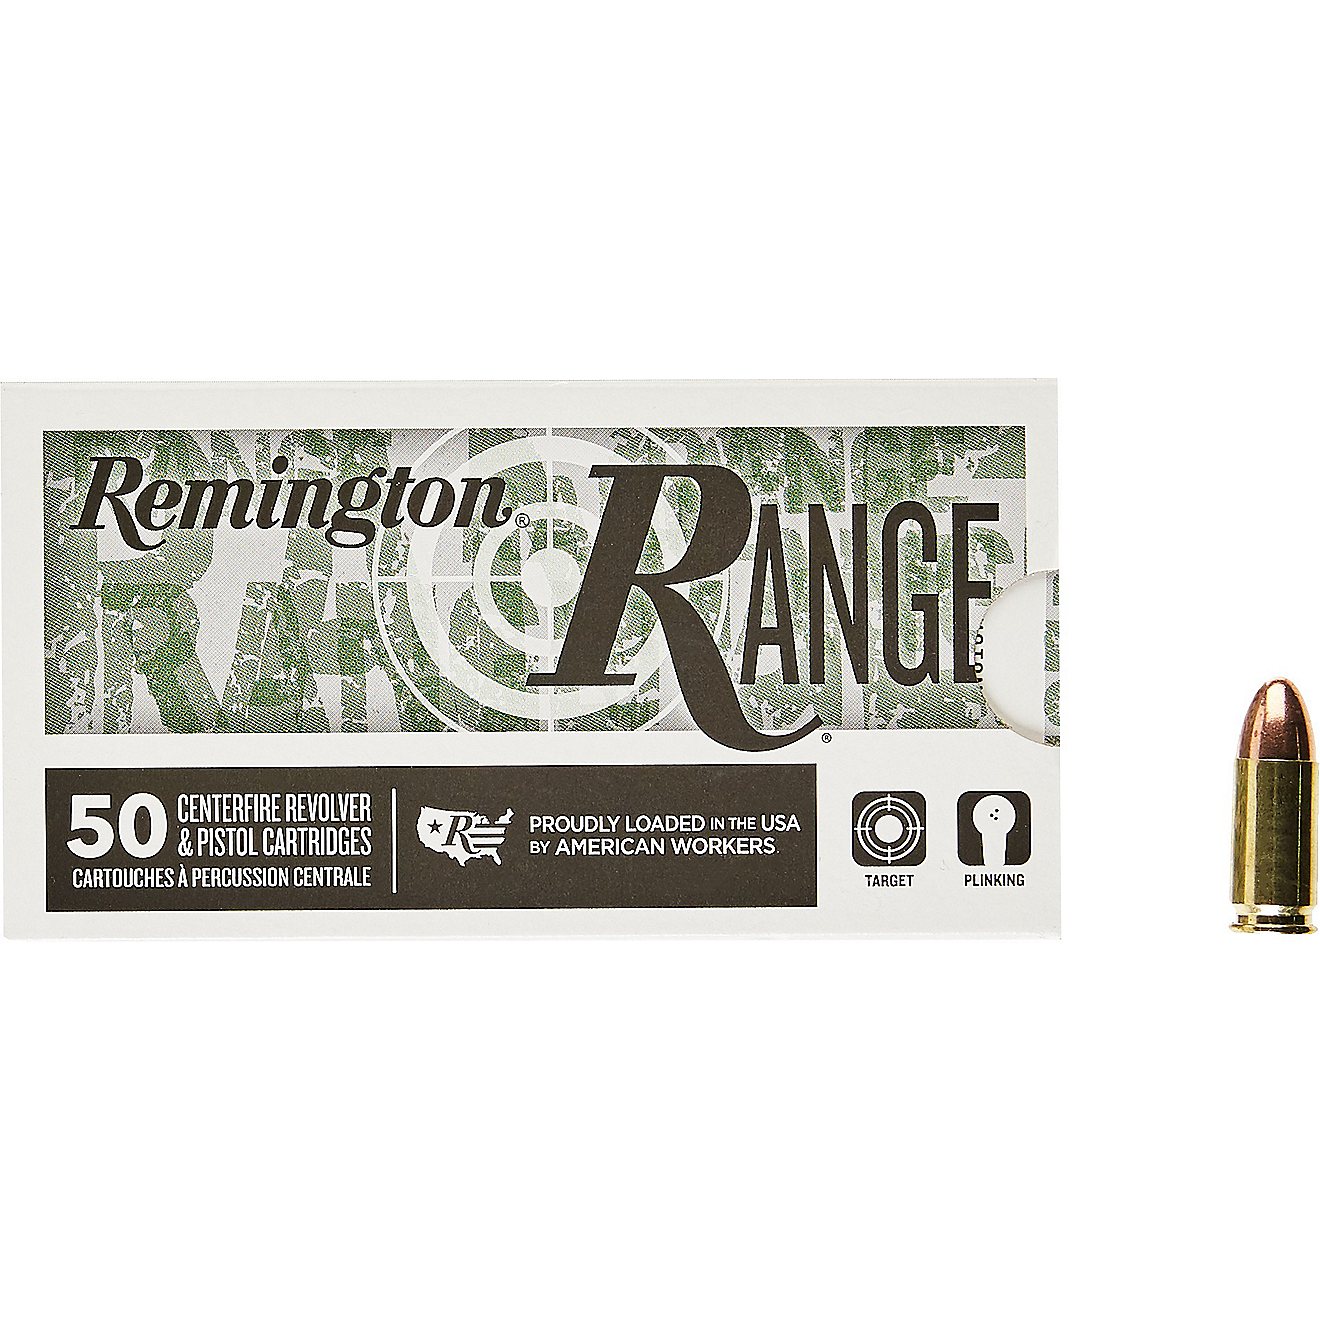 Remington Range 9mm Luger 115-Grain Centerfire Handgun Ammunition - 50 Rounds | Academy